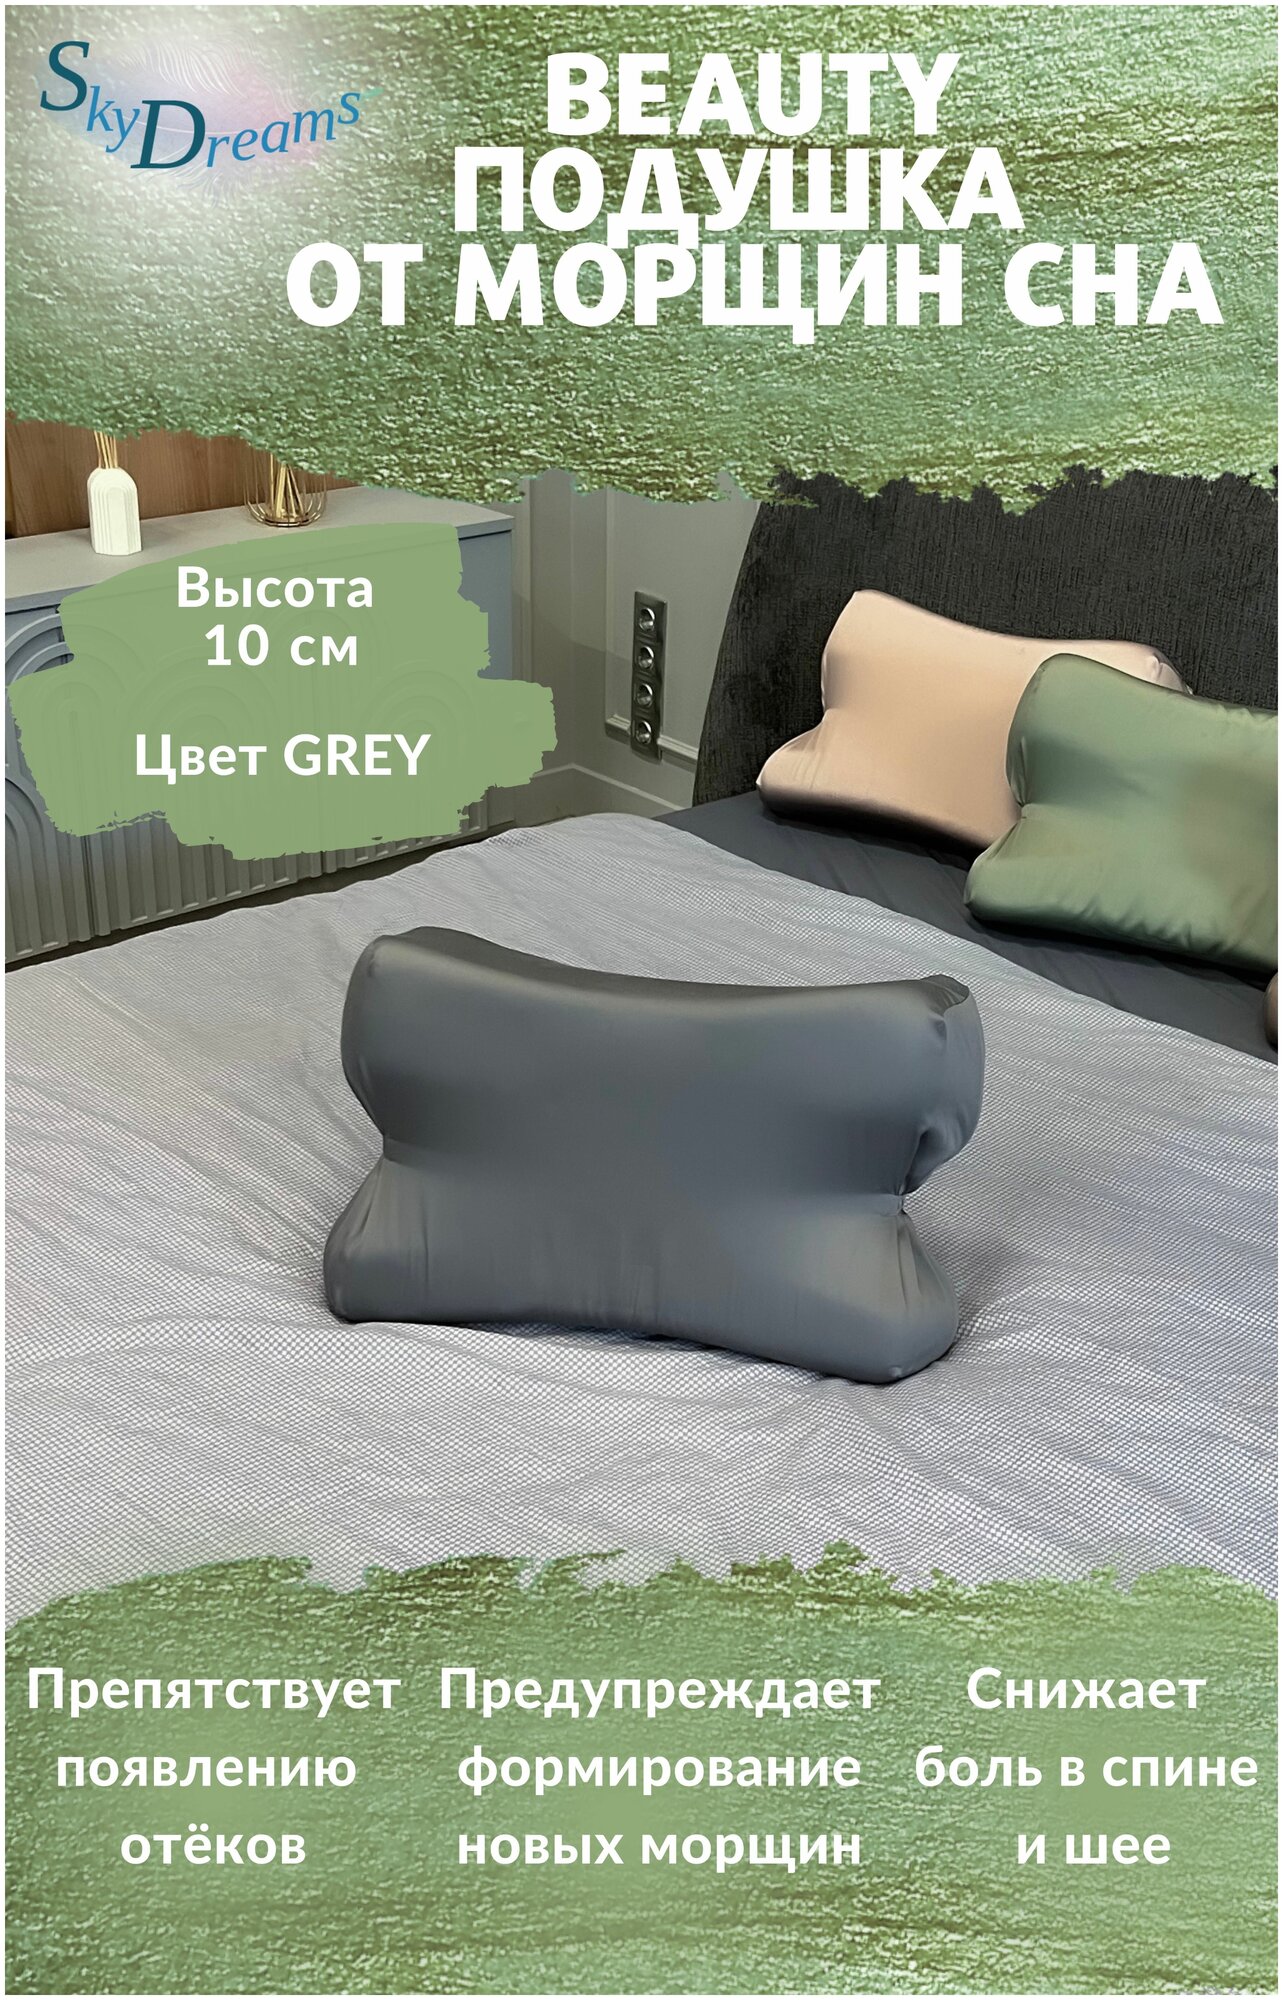 SkyDreams Анатомическая бьюти подушка от морщин сна, высота 10 см, цвет серый - фотография № 1